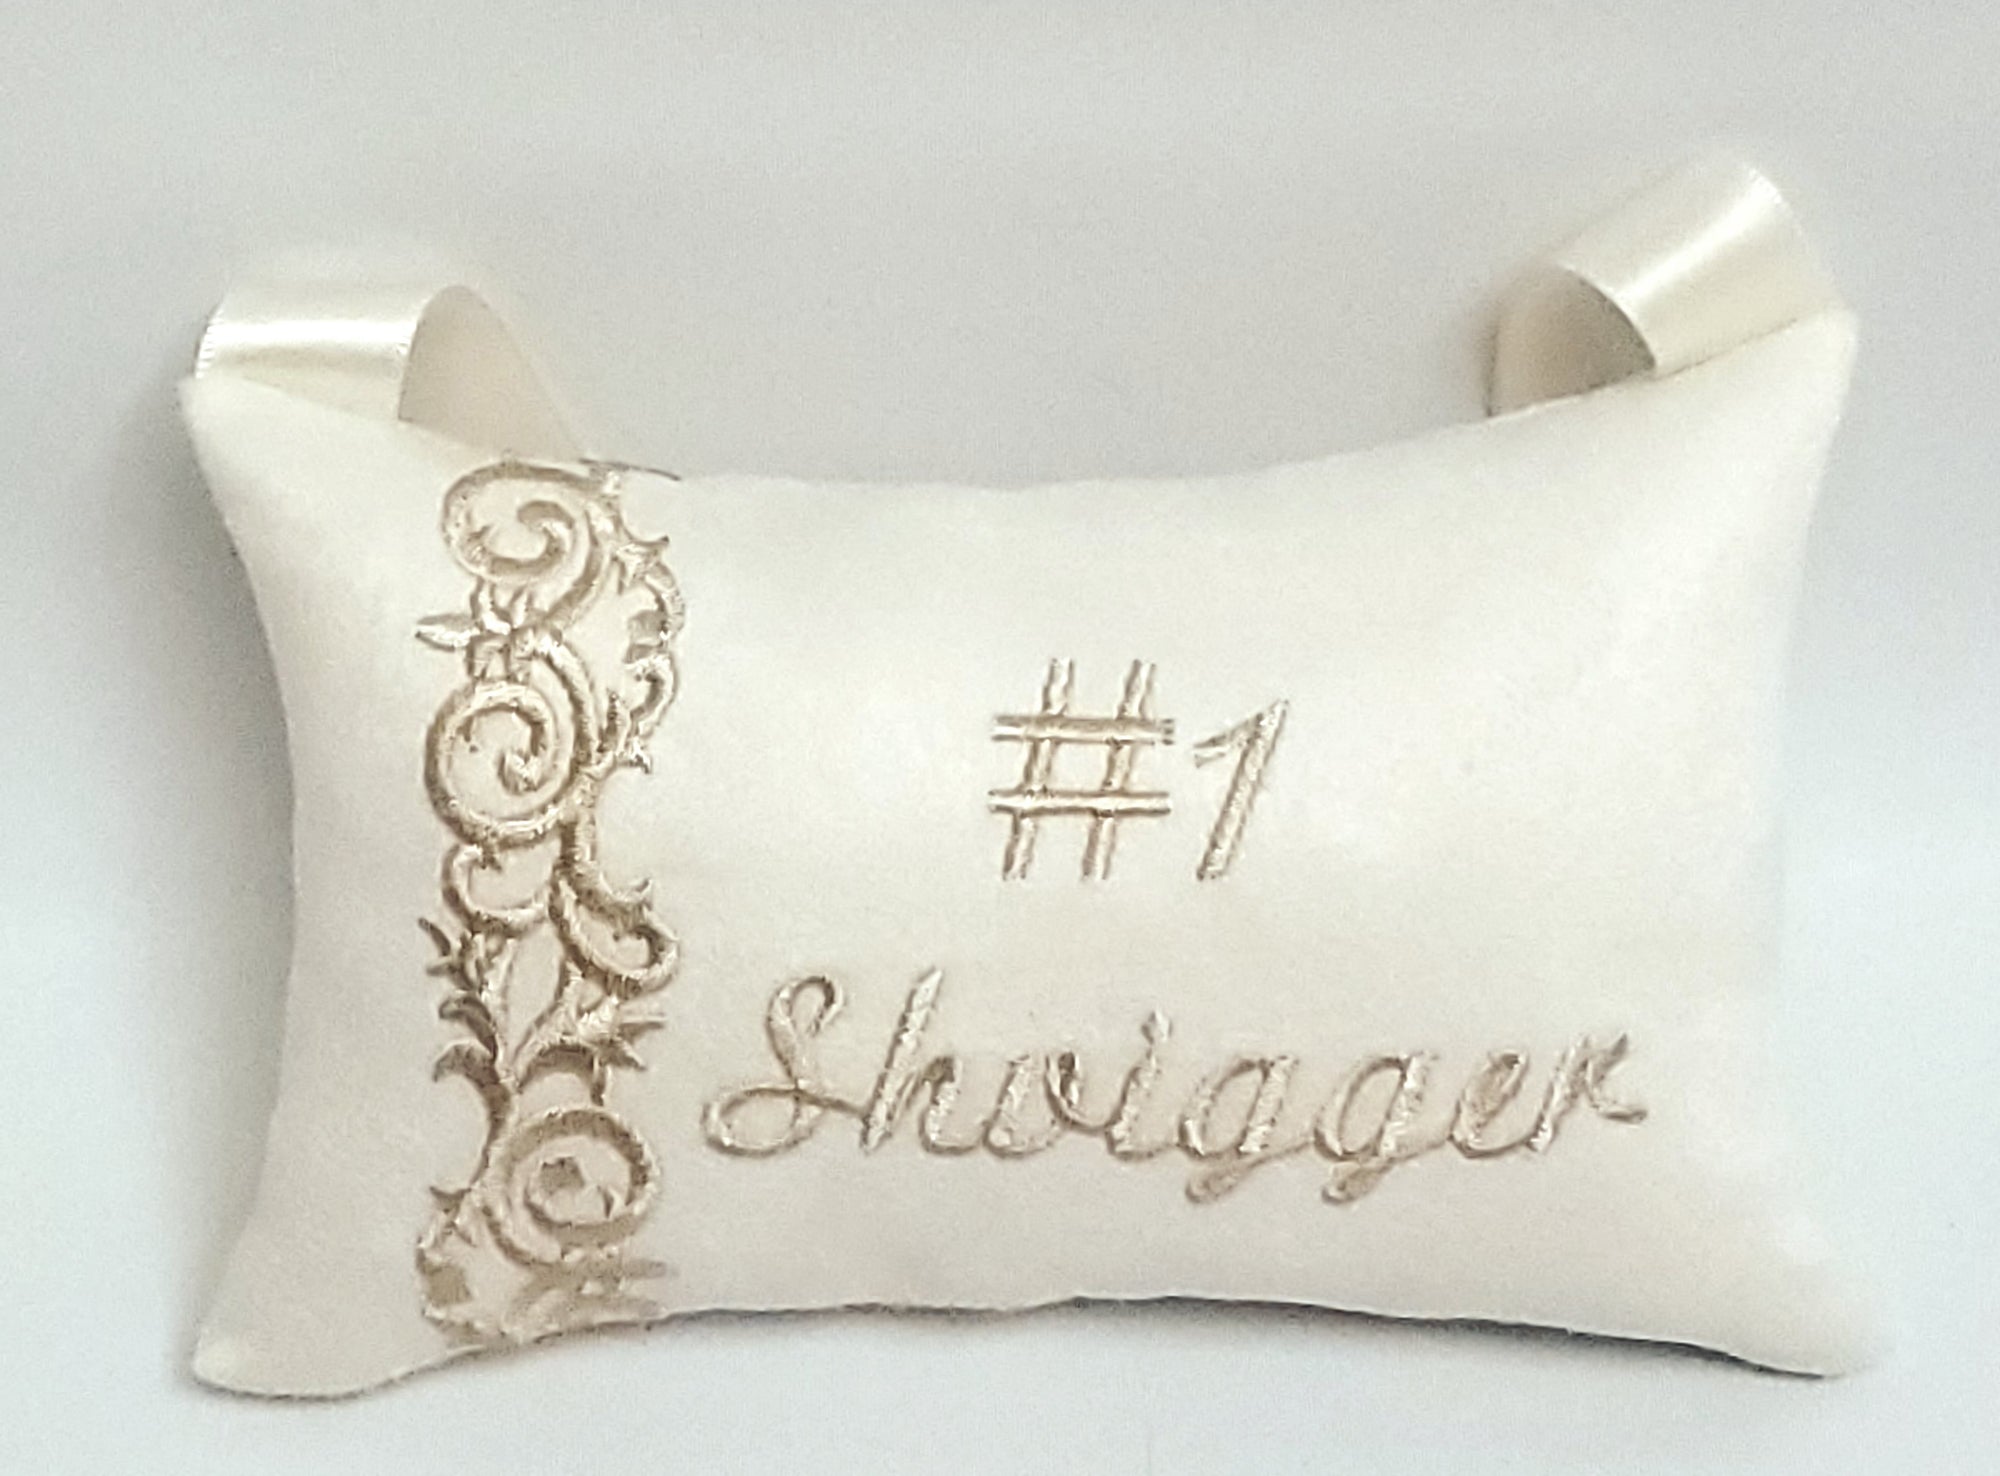 #1 Shvigger Pillow